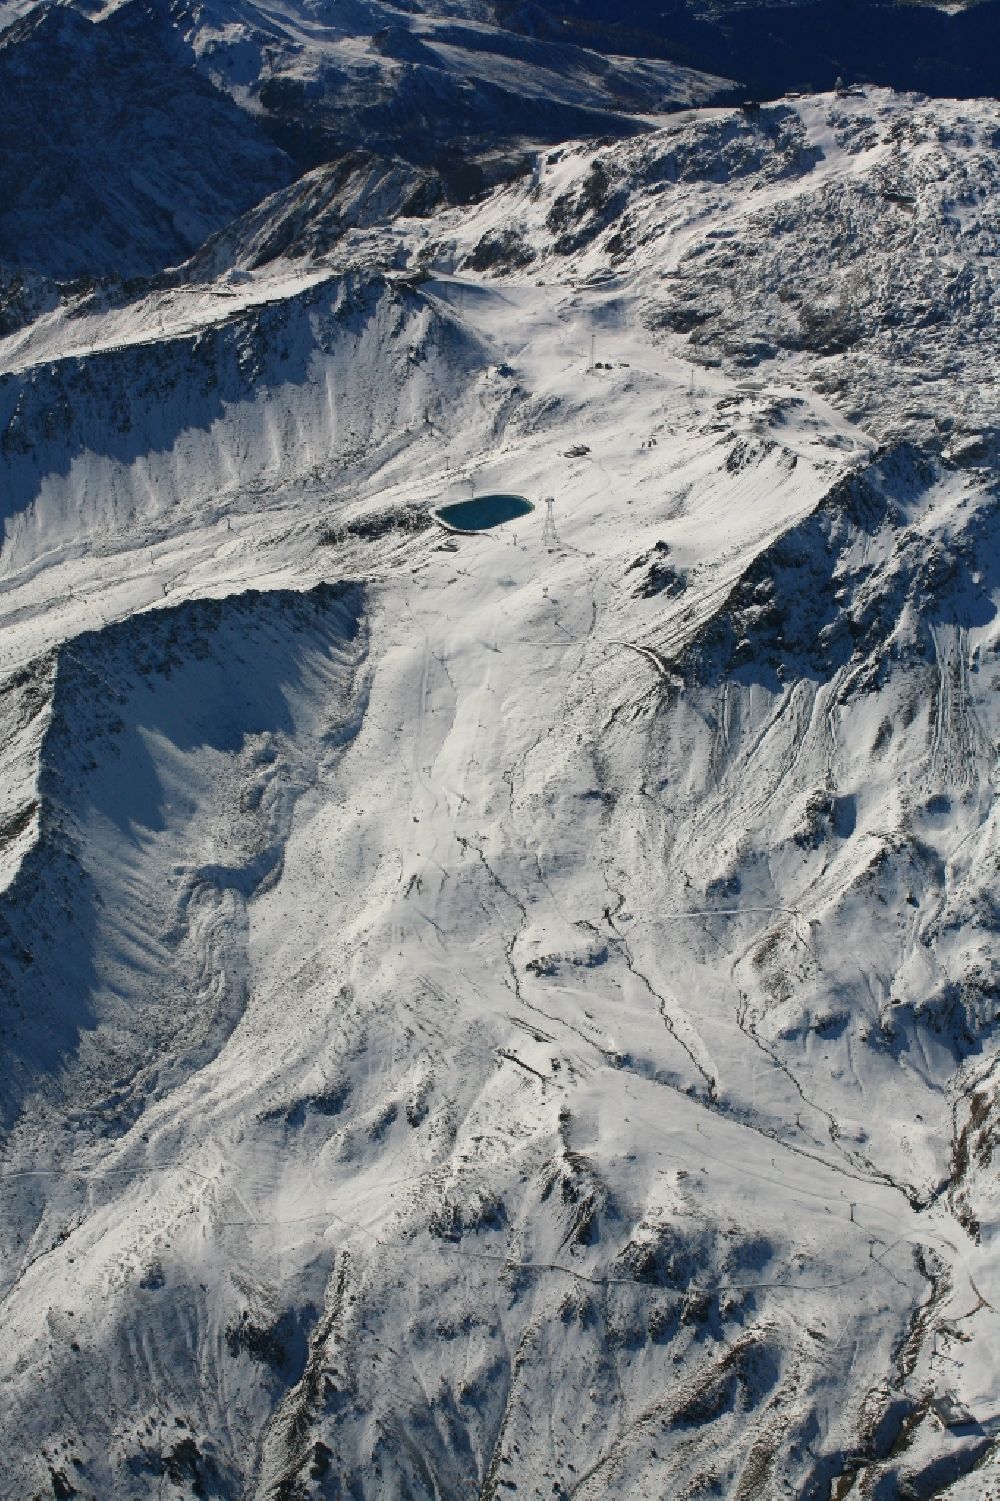 Luftbild Davos - Winterluftbild der Gipfelregion am Weißfluhjoch beim Totalpsee im Ski- und Wintersportgebiet von Davos im Kanton Graubünden, Schweiz